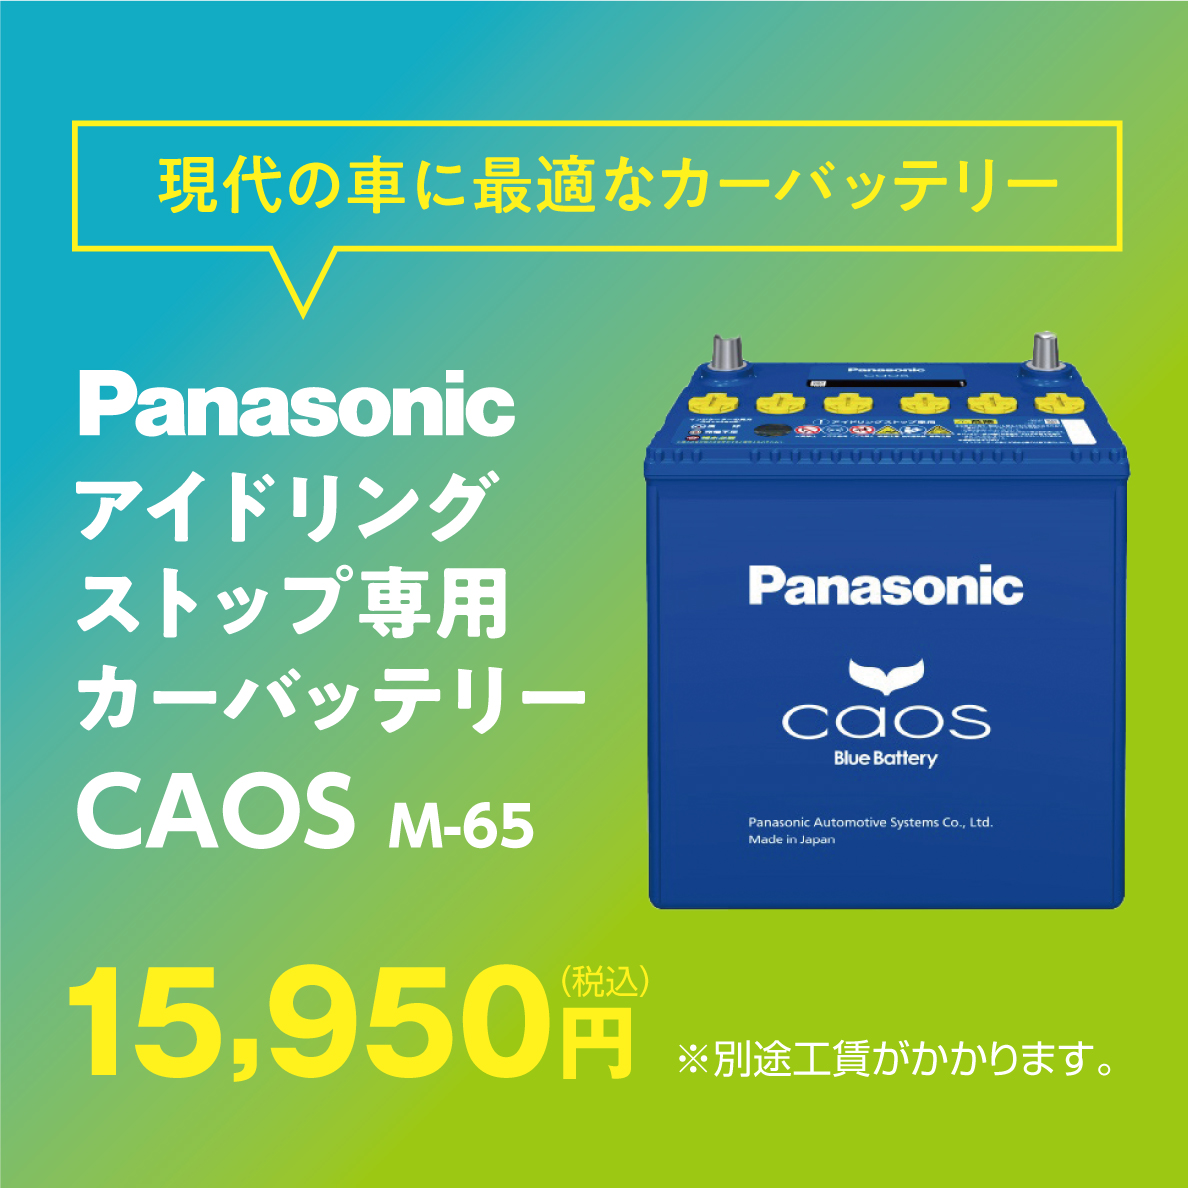 Panasonicアイドリングストップ専用カーバッテリーCAOS